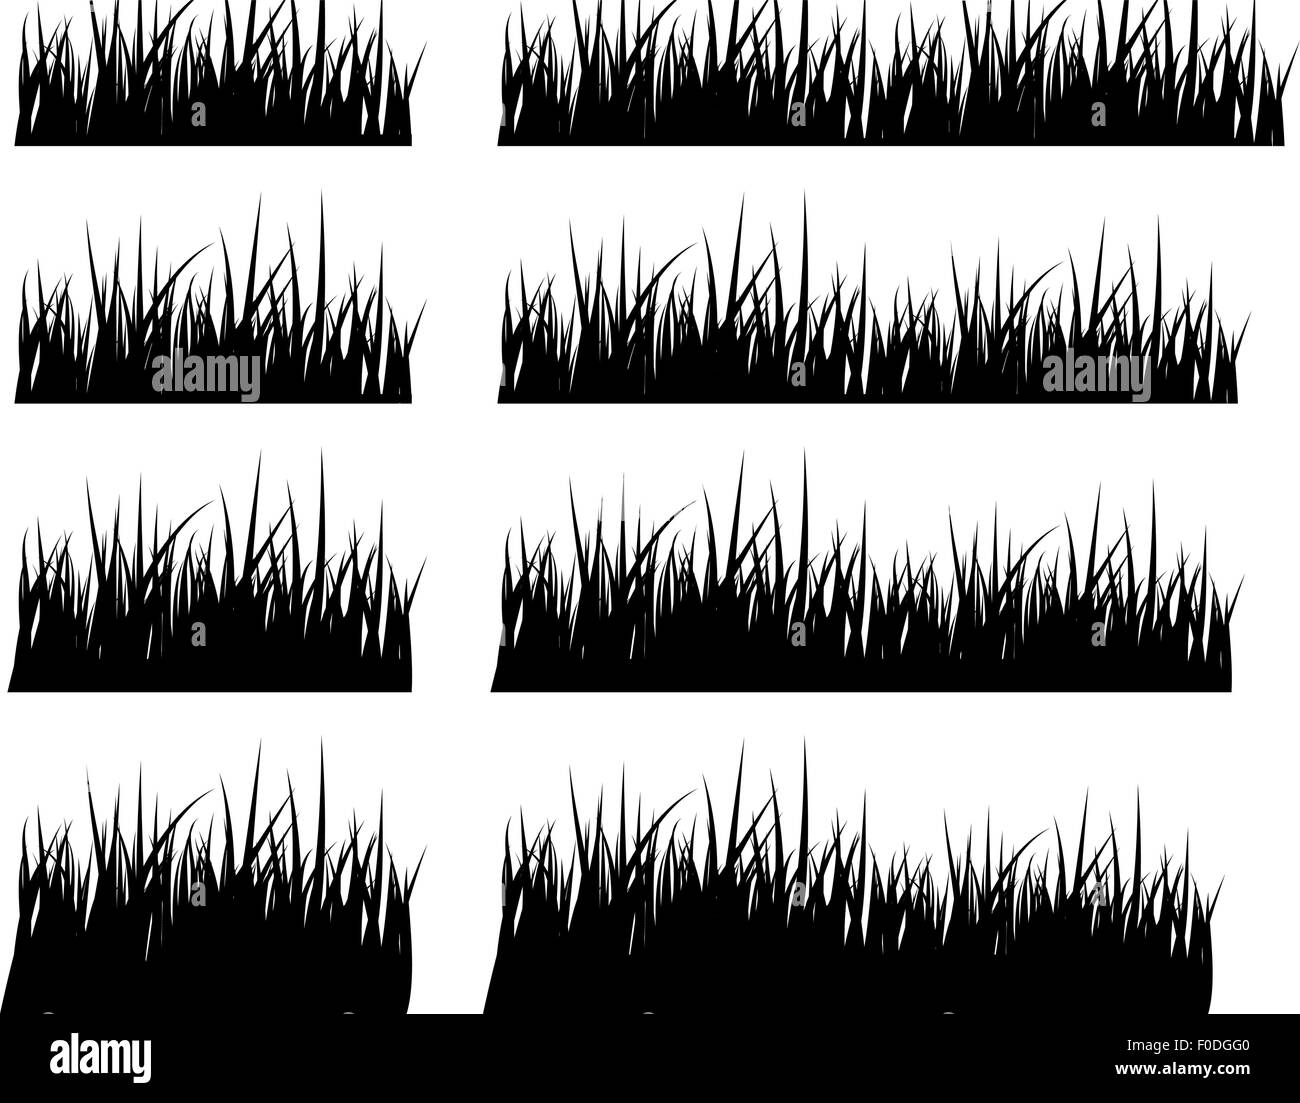 Schwarze Silhouette Gras in unterschiedlicher Höhe festgelegt, Vektor Stock Vektor